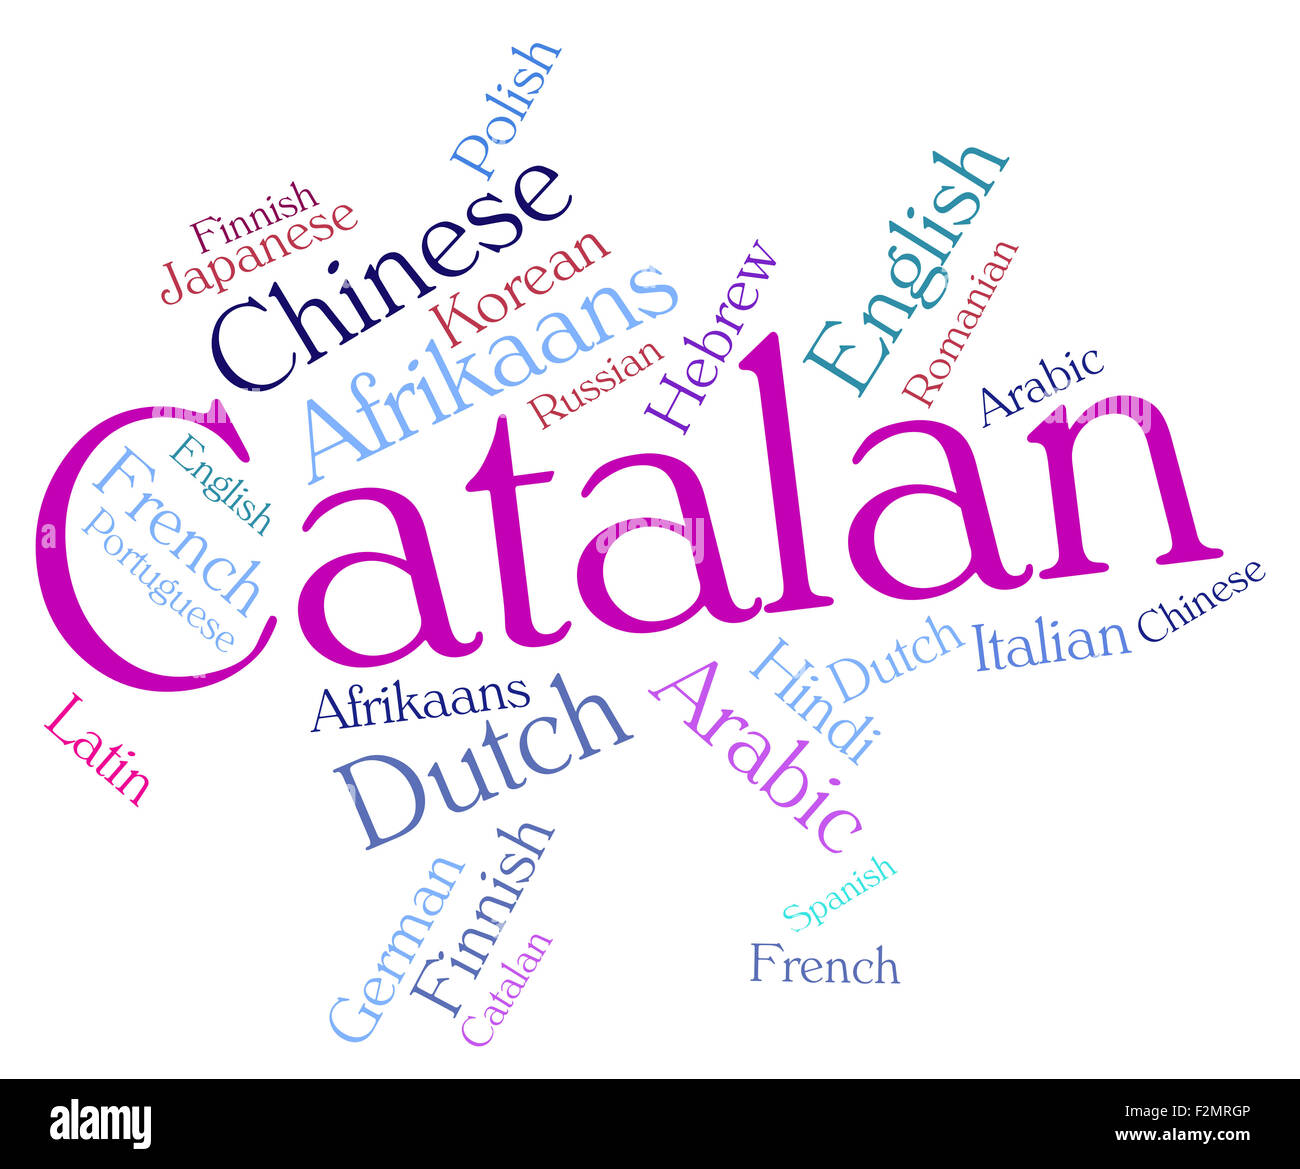 Catalan language